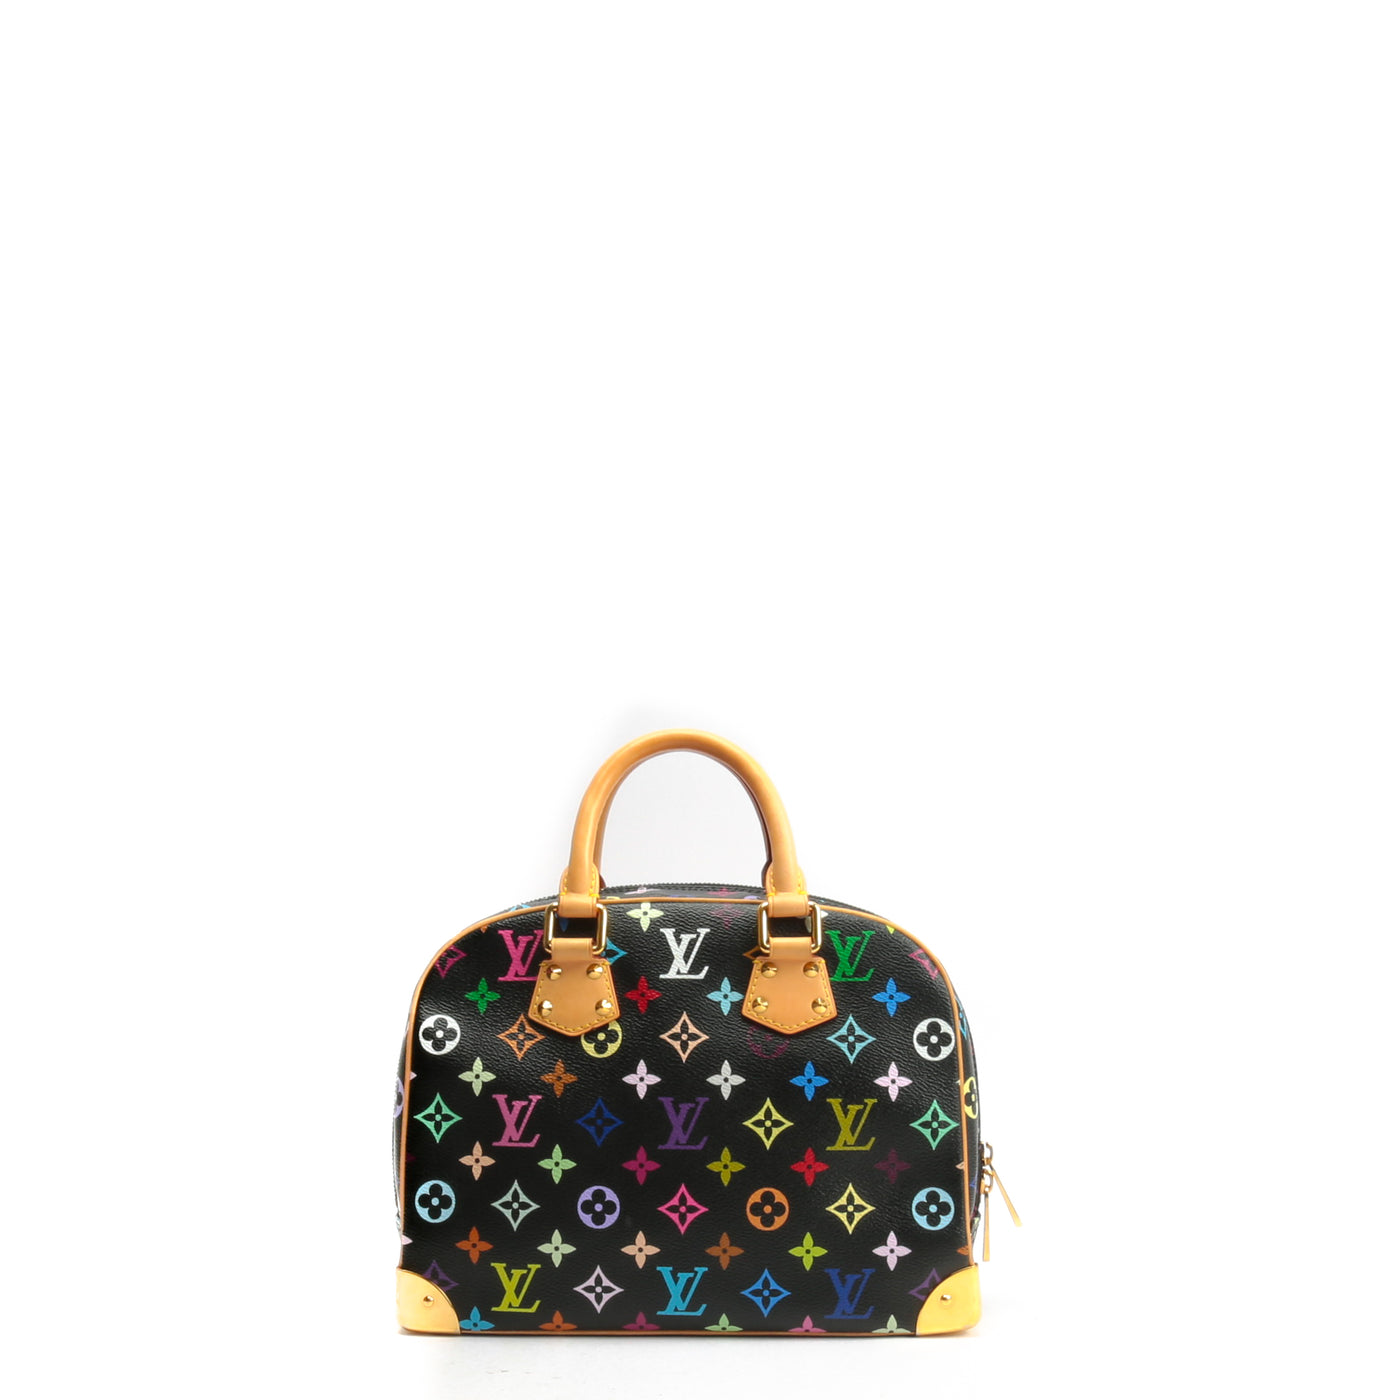 Louis Vuitton Monogram Trouville Handbag This Is An Authentic